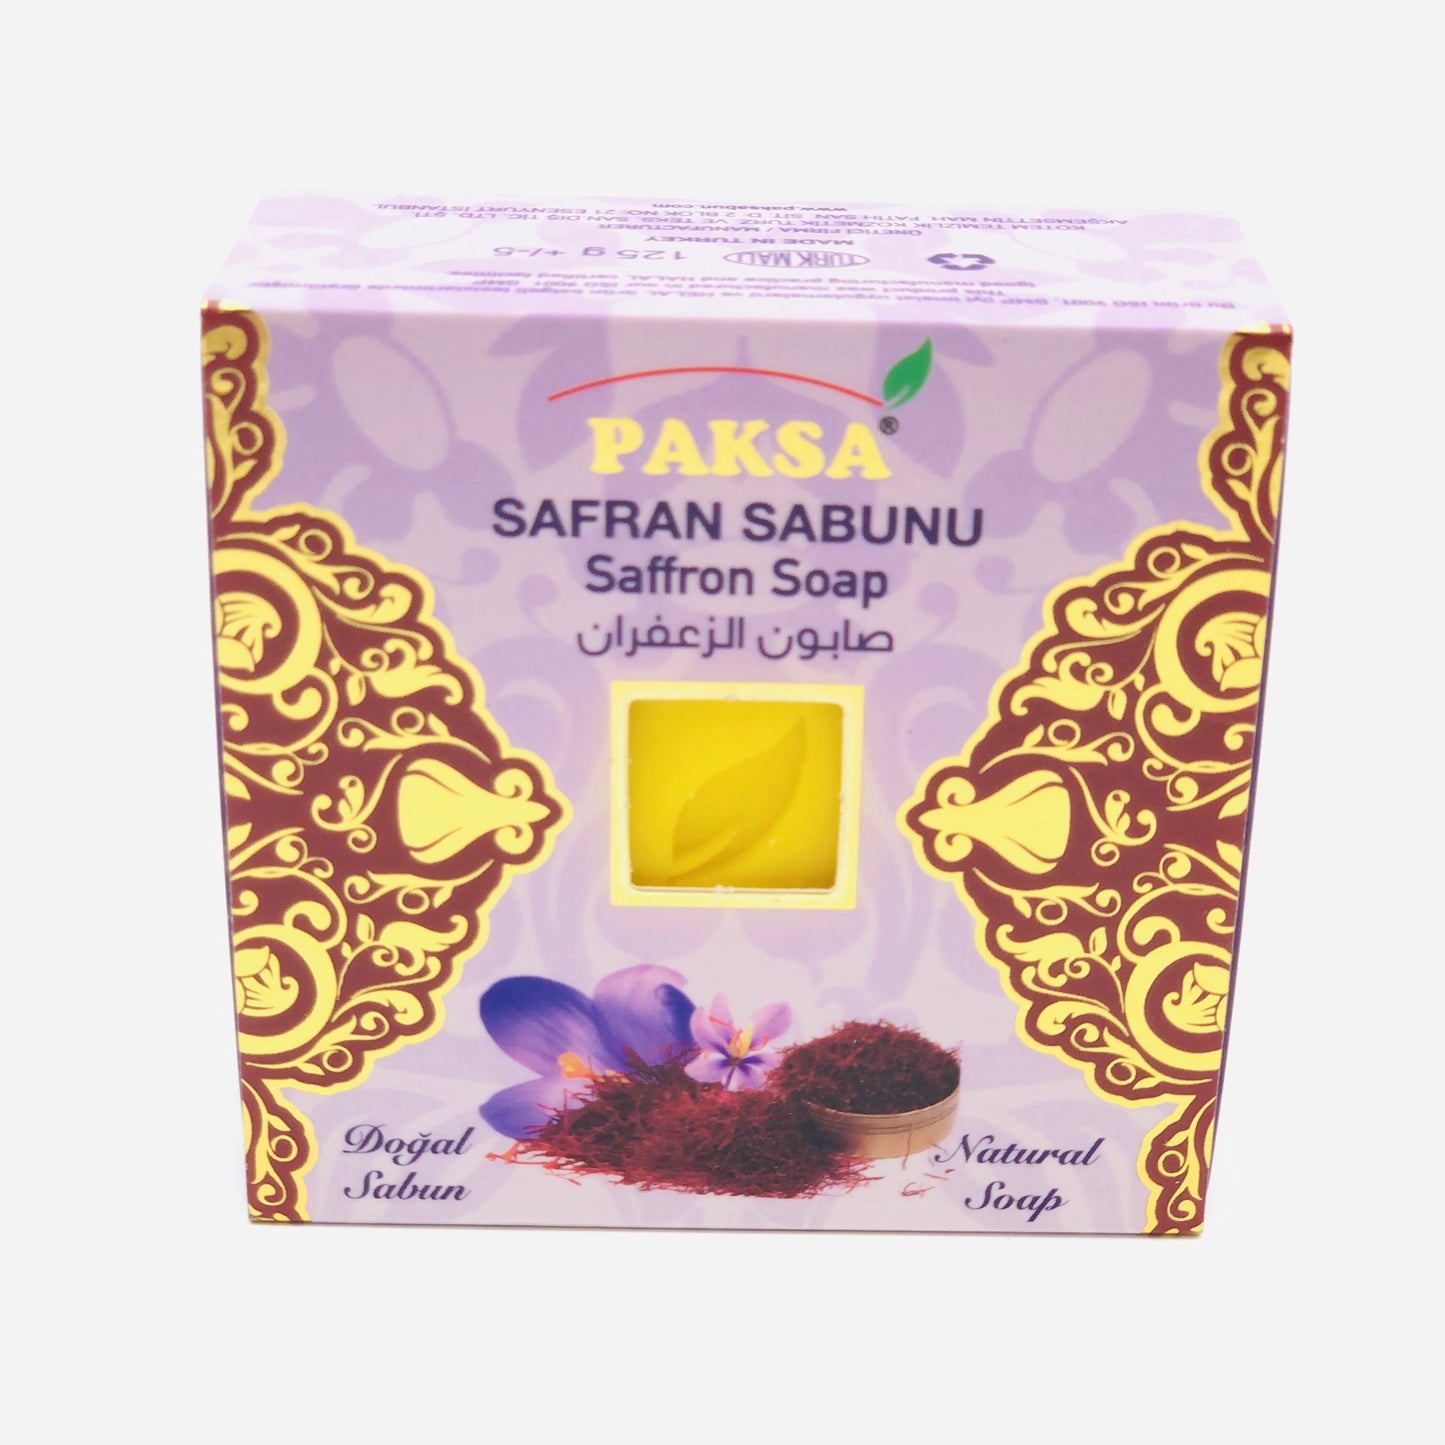 Paksa, Organic Saffron Soap